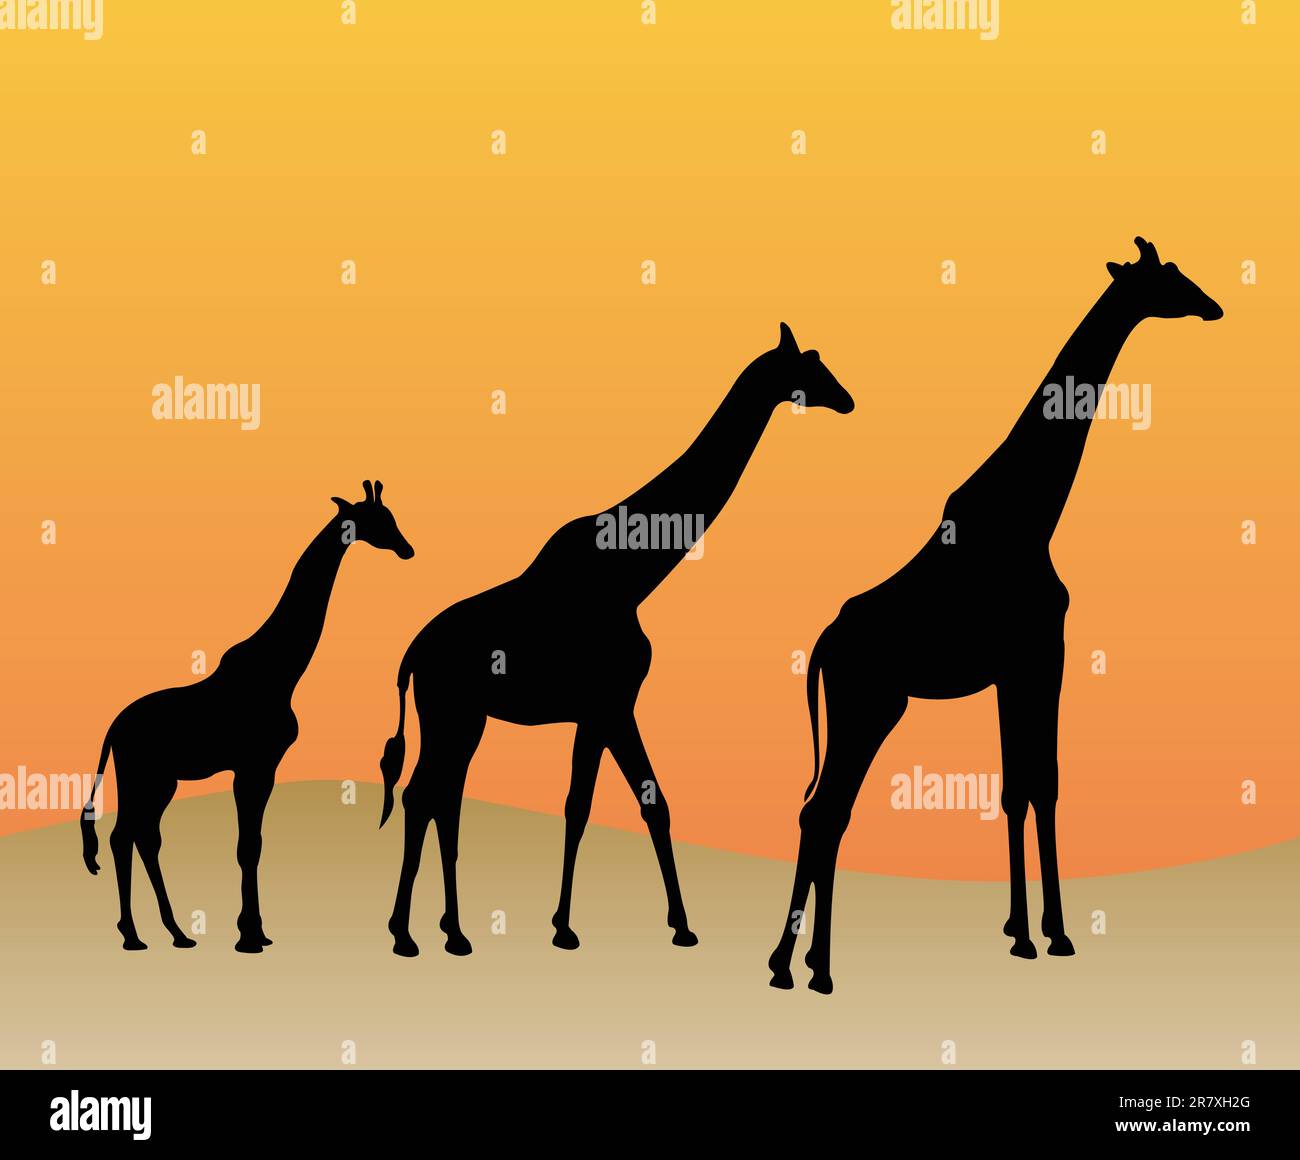 Collezione di giraffe silhouette - vettoriali Illustrazione Vettoriale